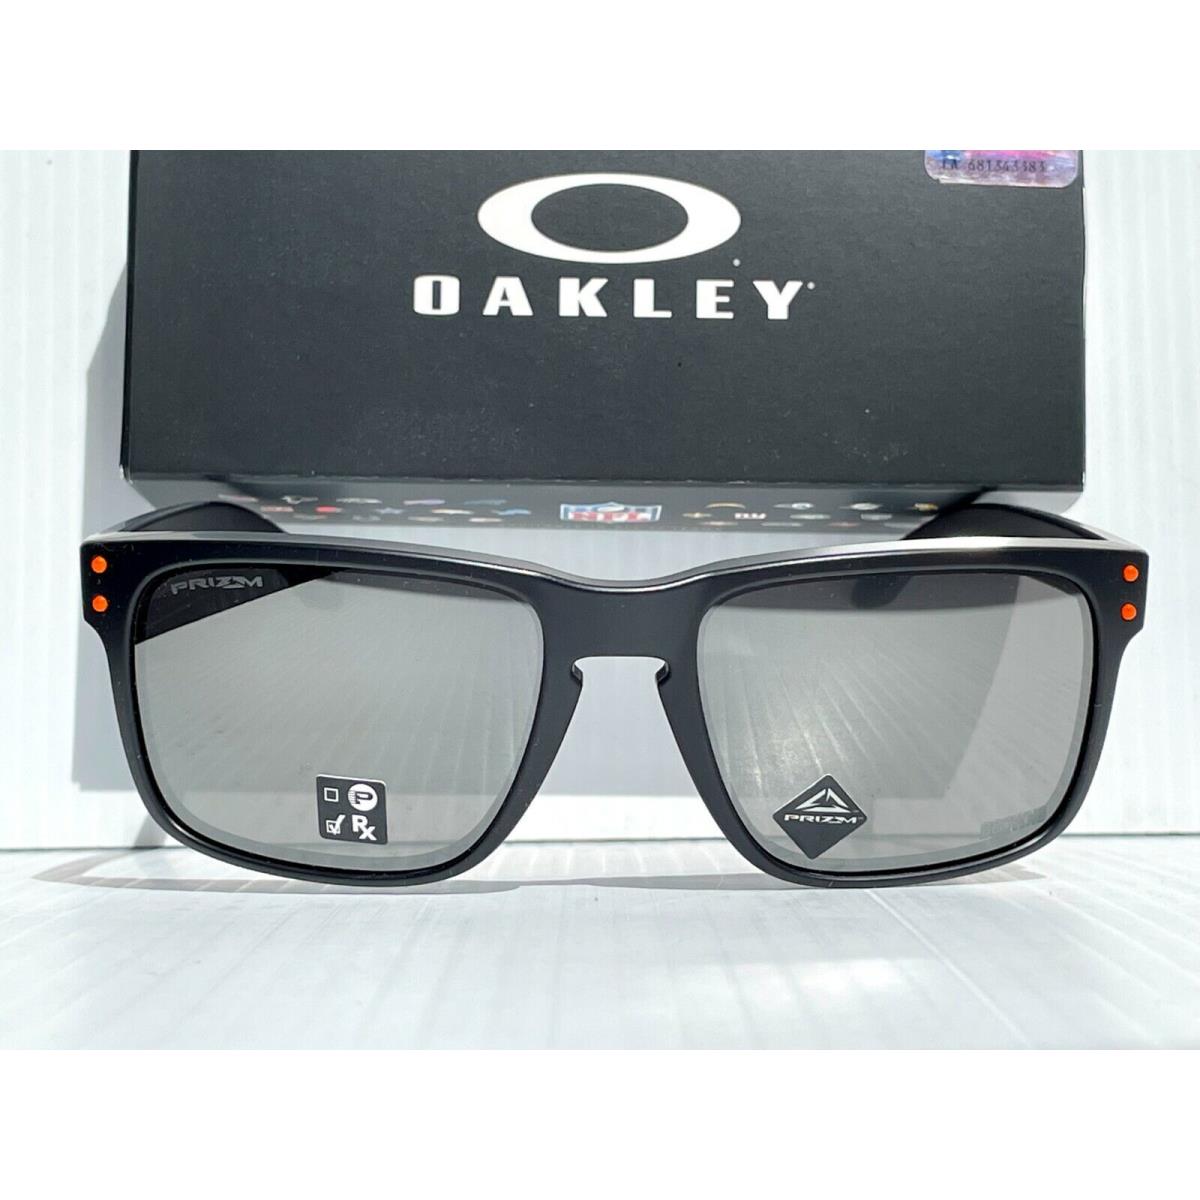 Oakley sunglasses Holbrook - Black Frame, Silver Lens 6